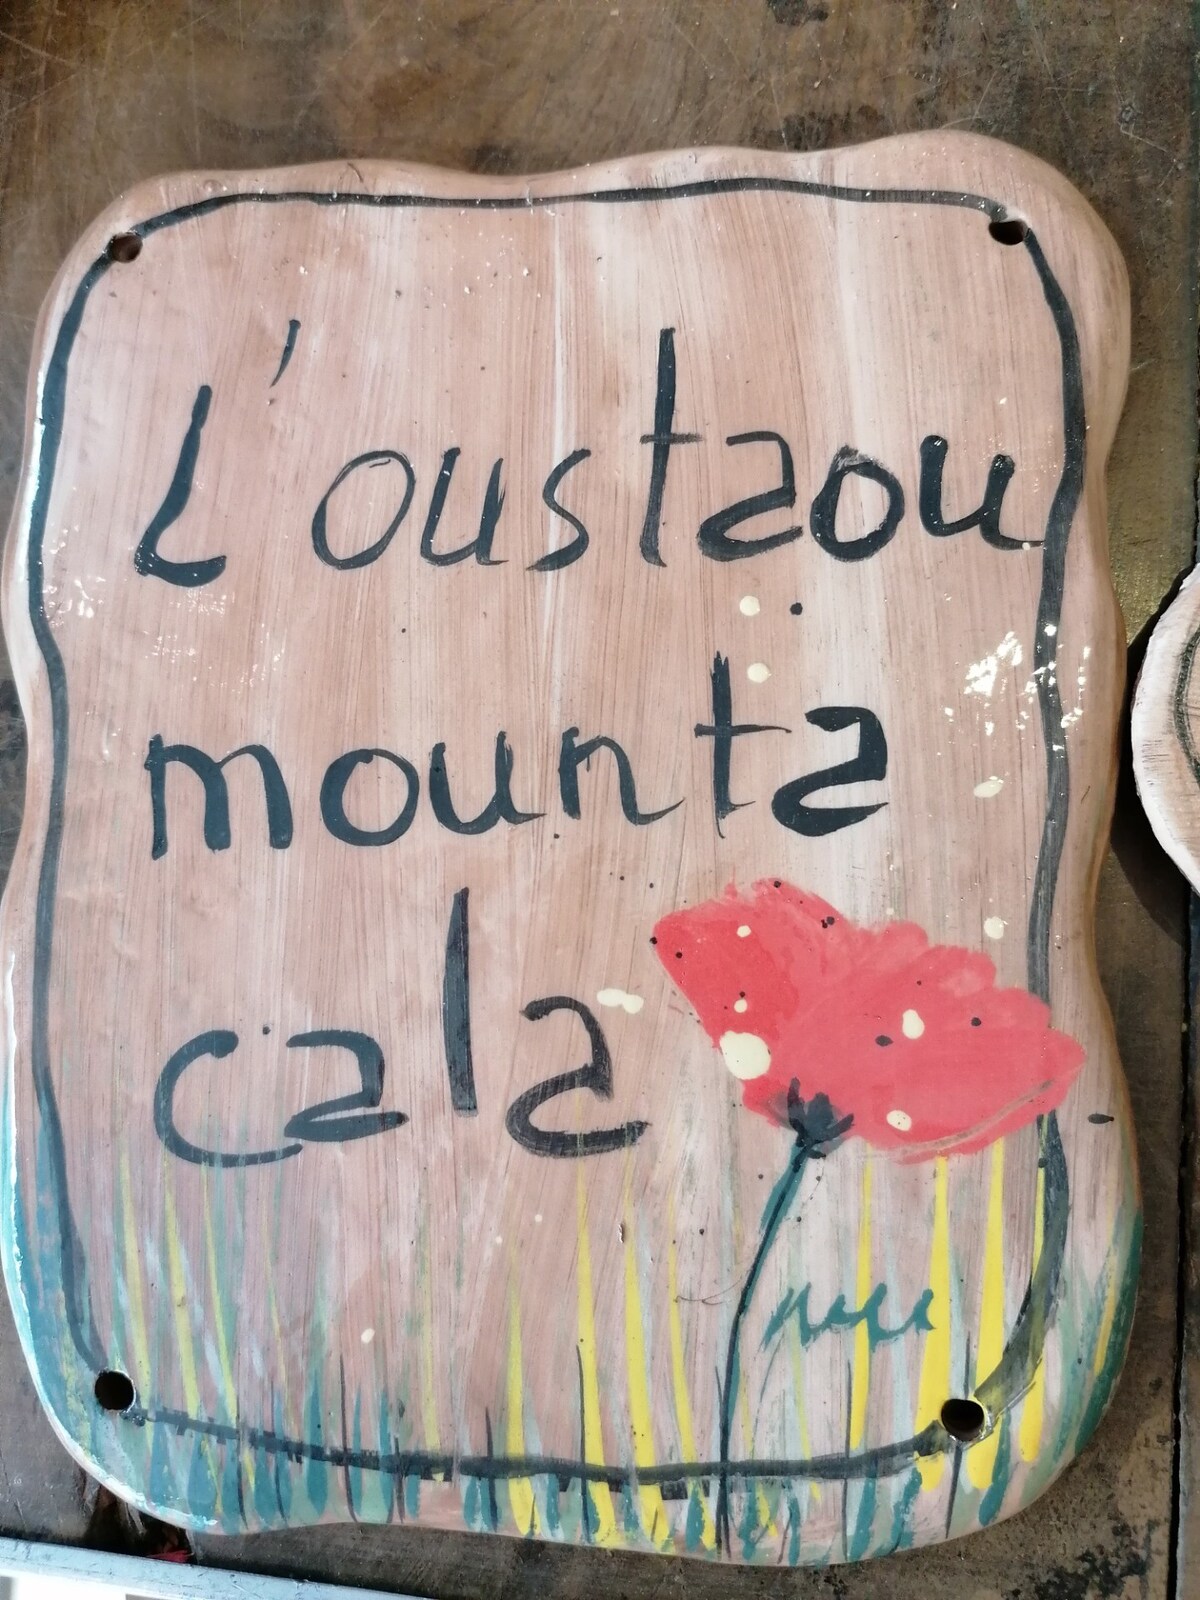 村庄"L 'oustaou Mounta cala"